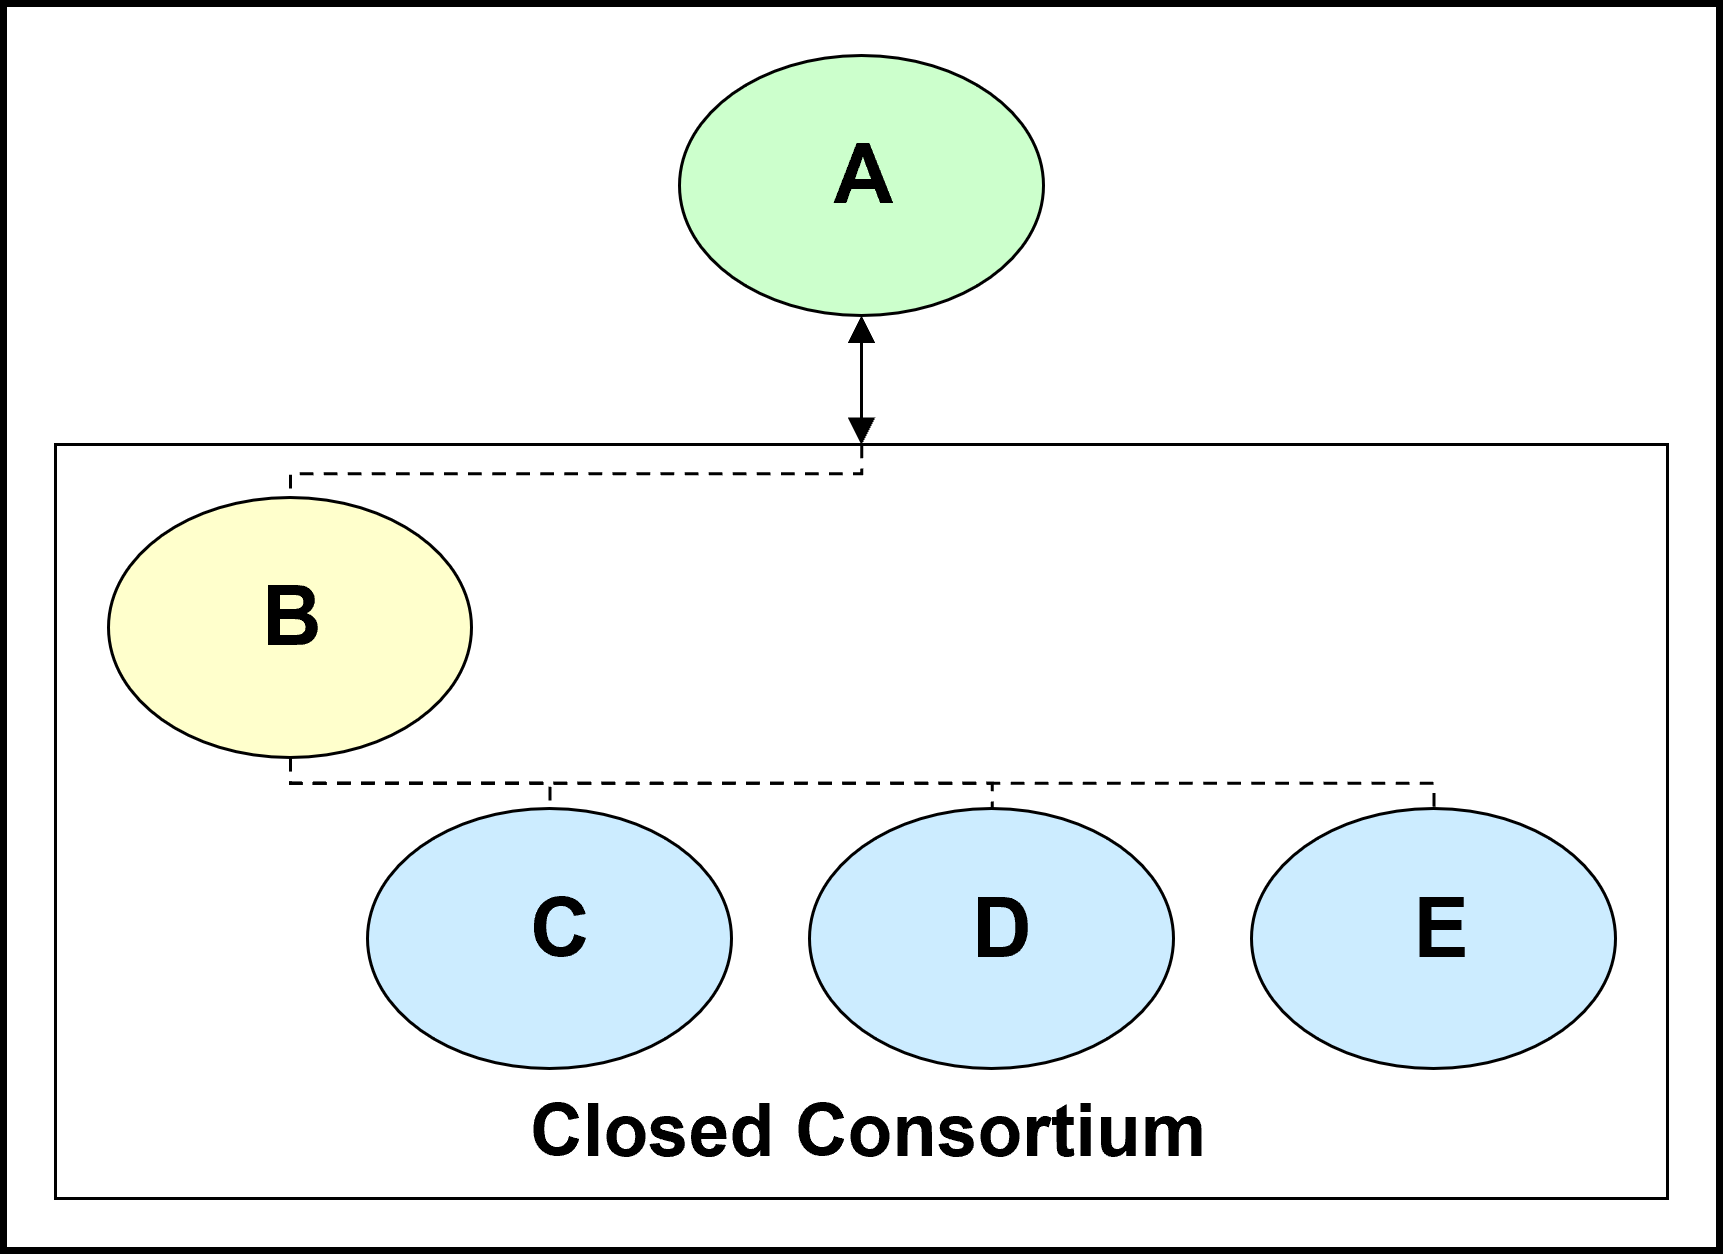 Closed Consortium